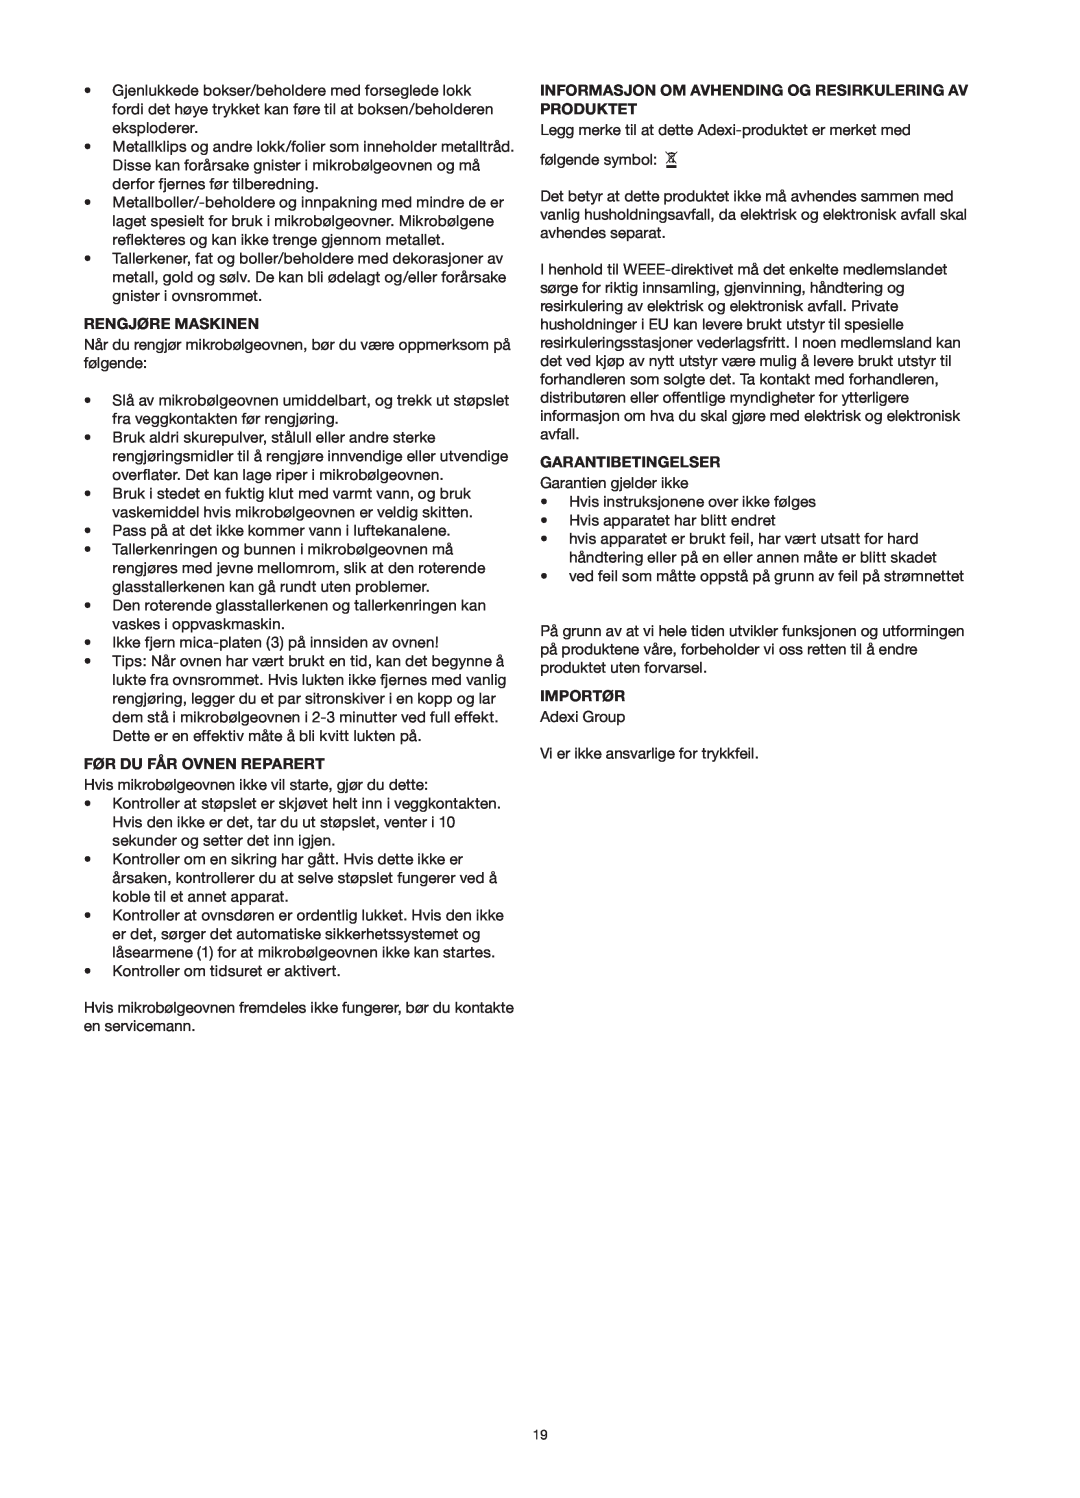 Melissa 253-013 manual Rengjøre Maskinen, Før Du Får Ovnen Reparert, Informasjon Om Avhending Og Resirkulering Av Produktet 